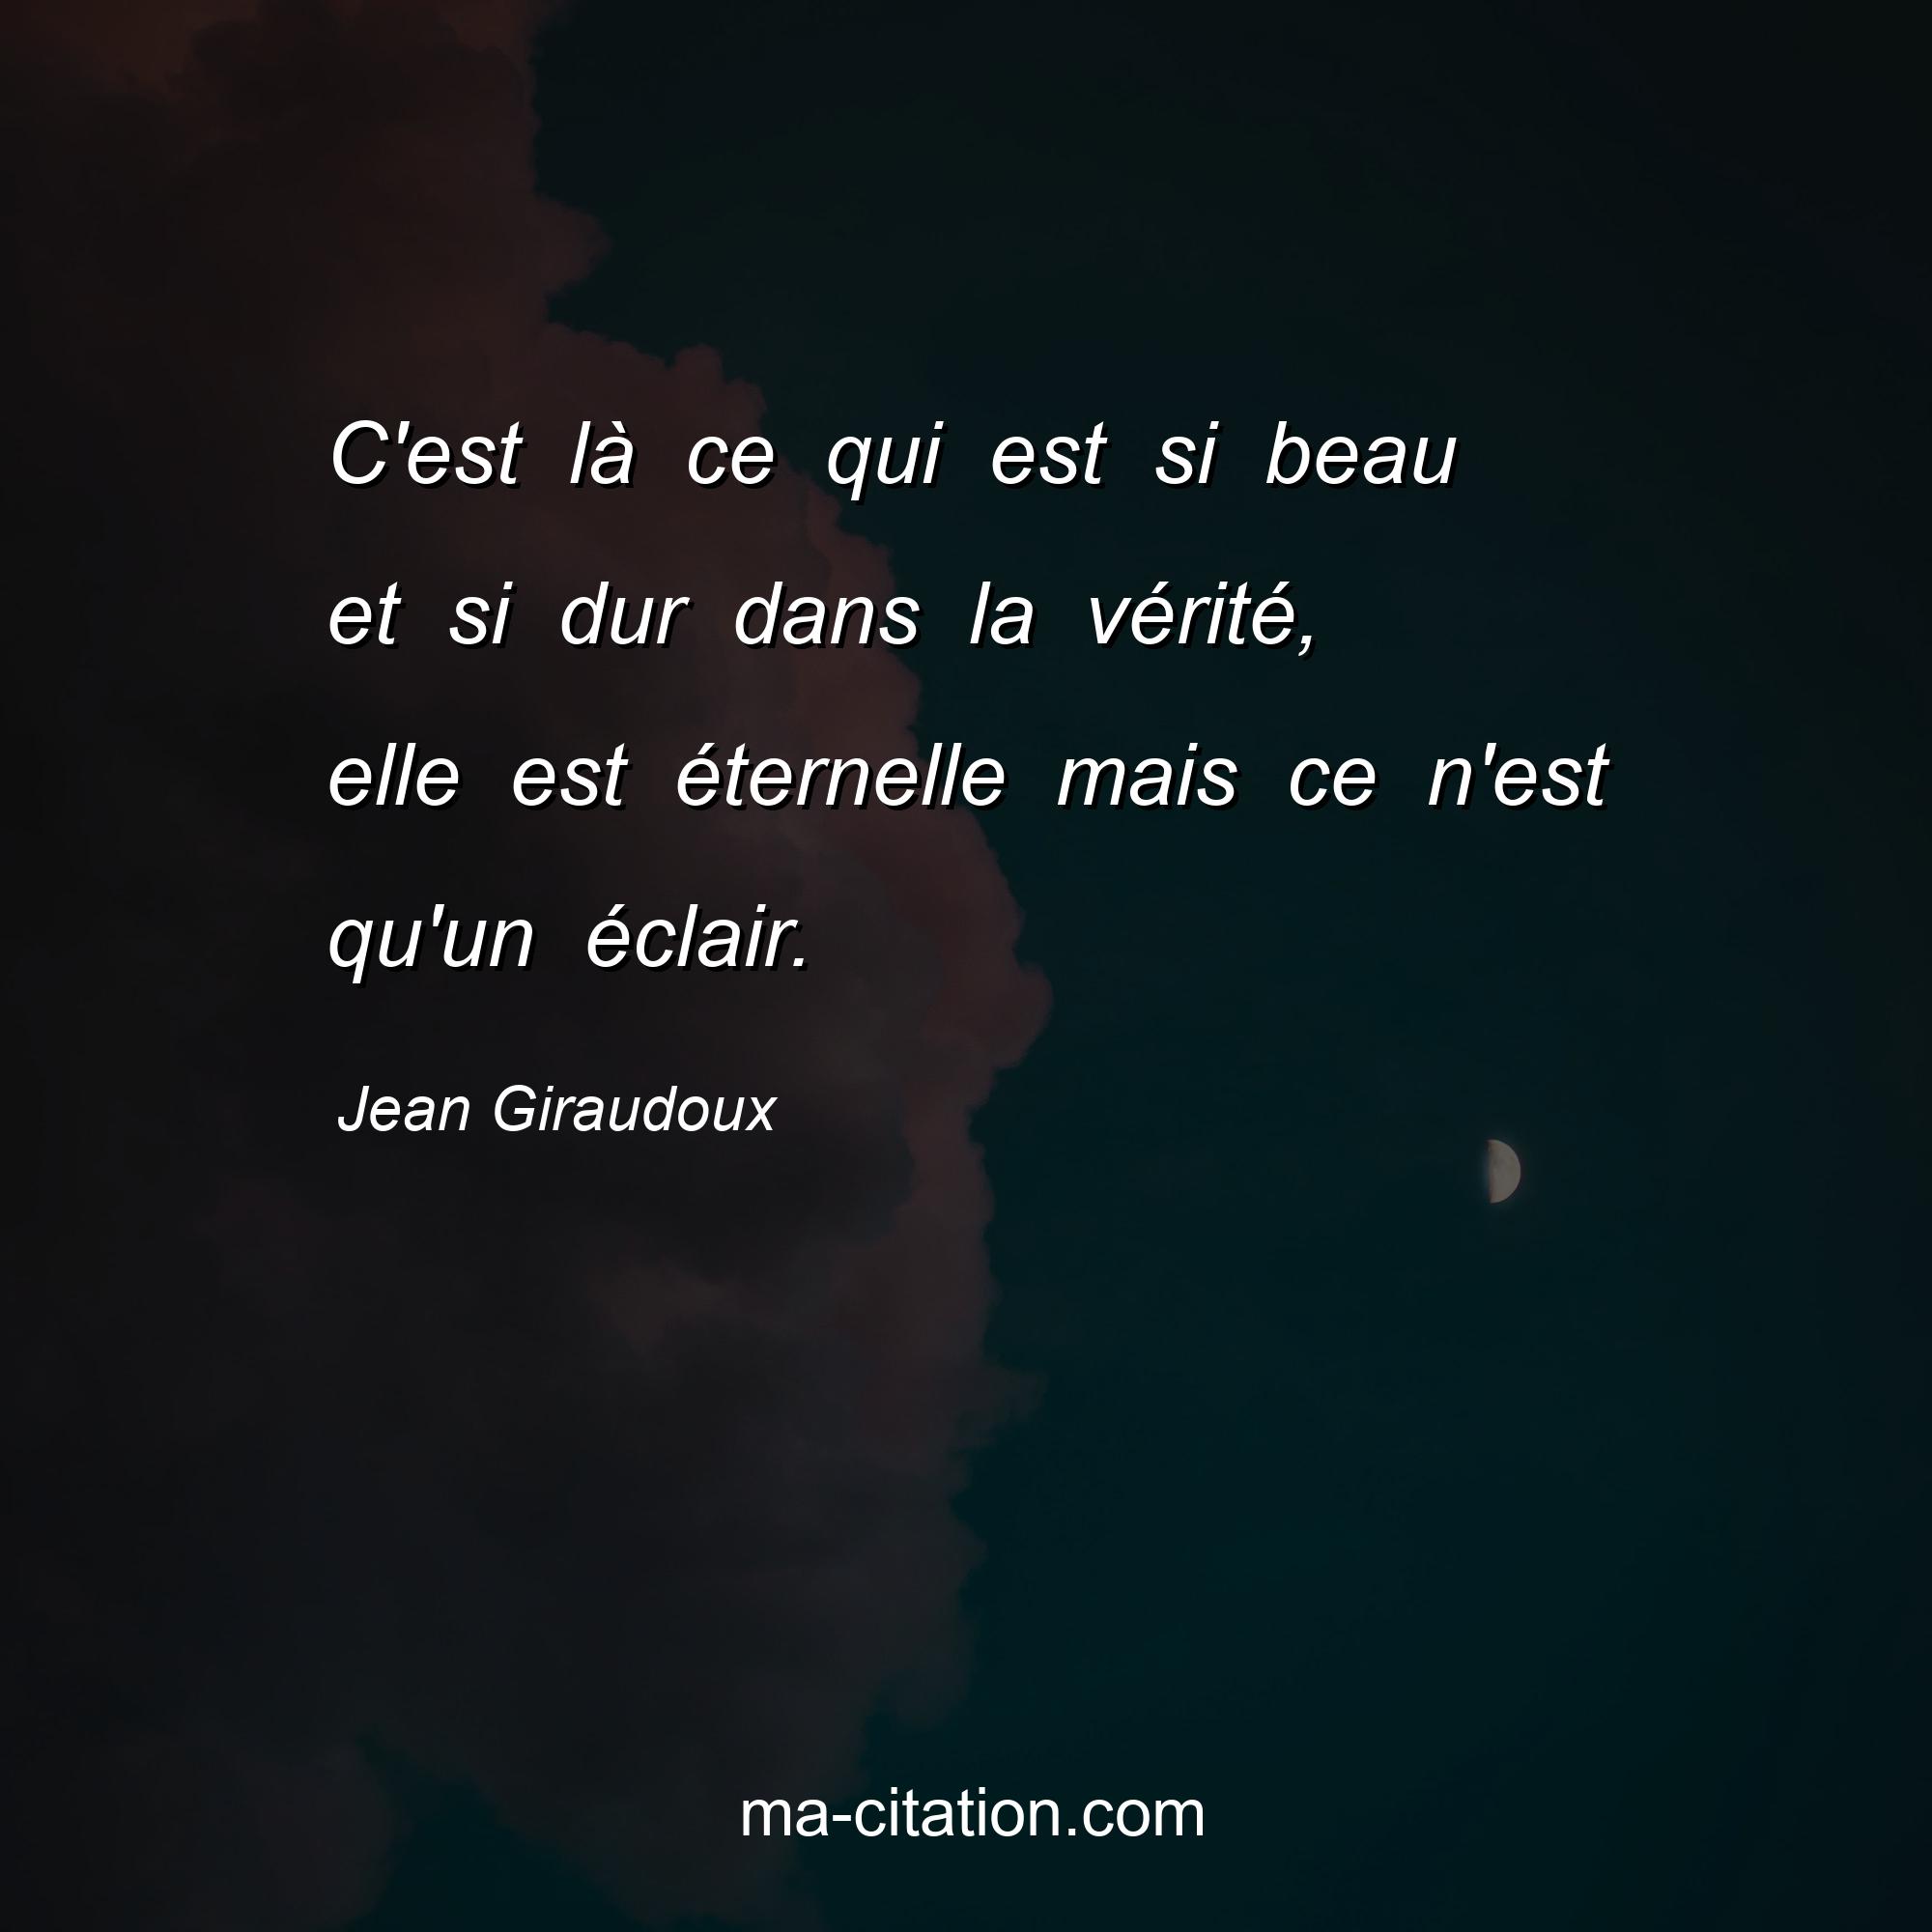 Jean Giraudoux : C'est là ce qui est si beau et si dur dans la vérité, elle est éternelle mais ce n'est qu'un éclair.